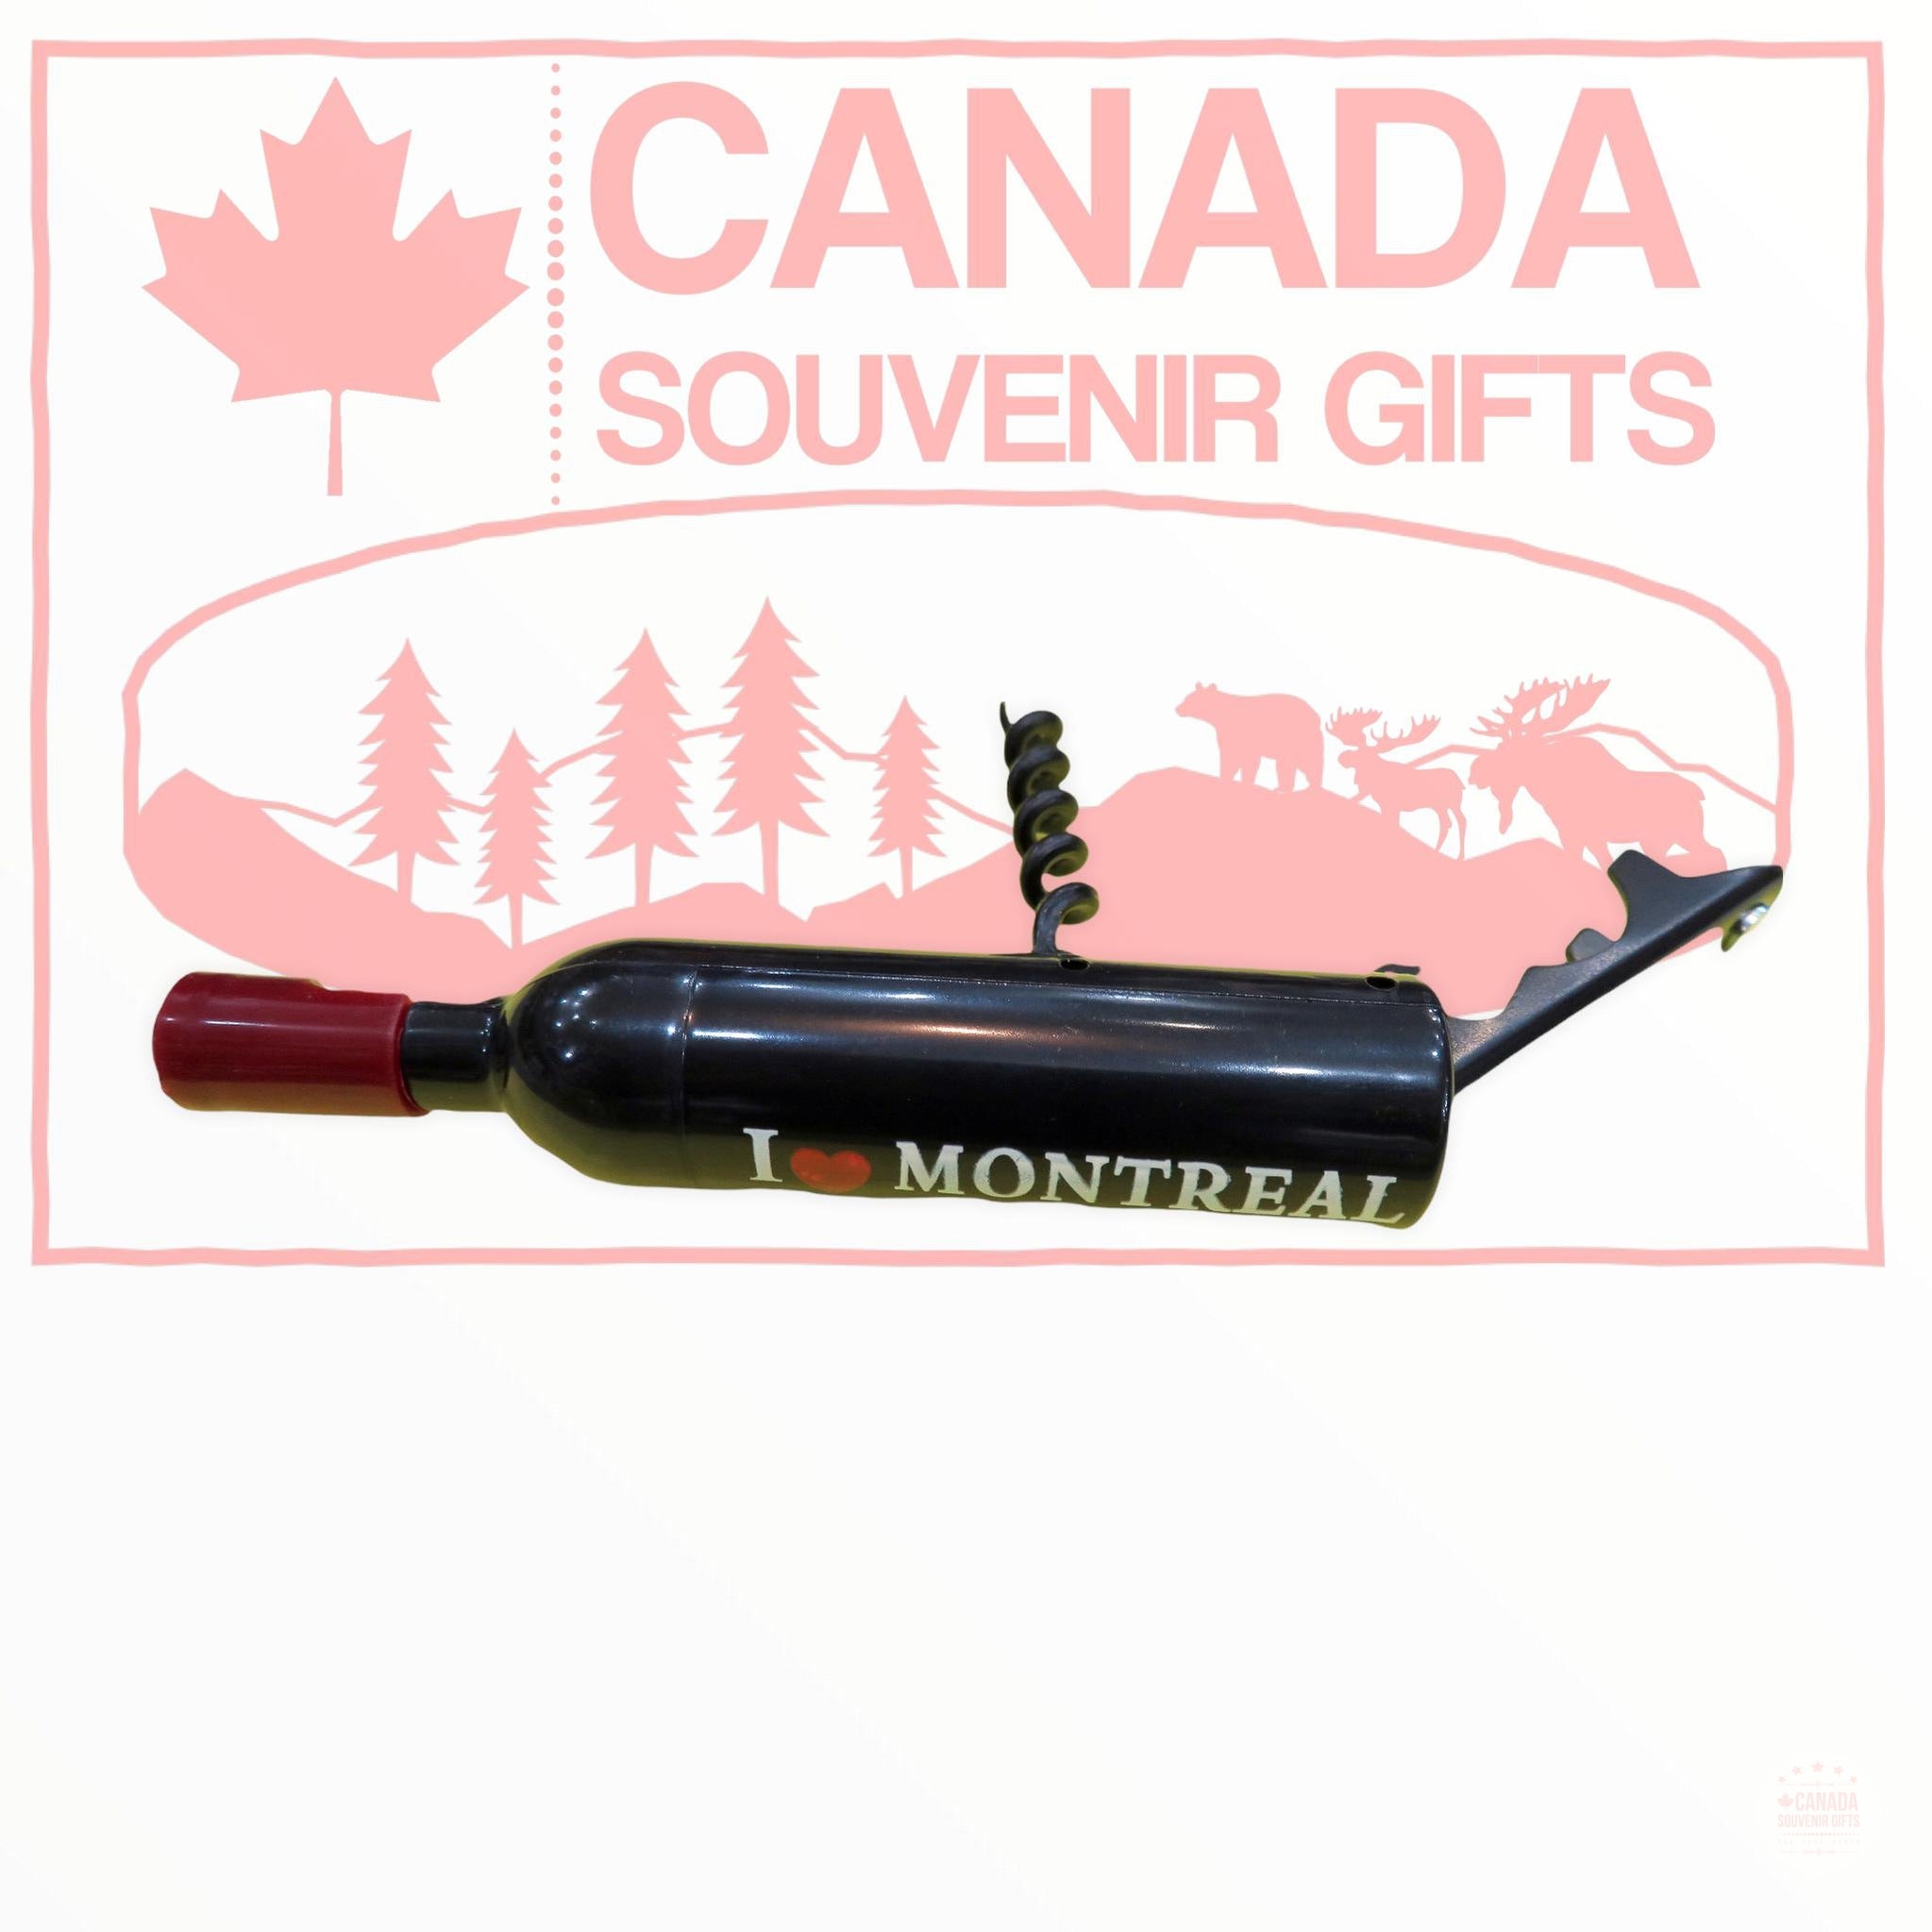 Montreal Magnetic Wine Bottle Corkscrew - I Love Montreal Themed Wine Opener Fridge Magnet